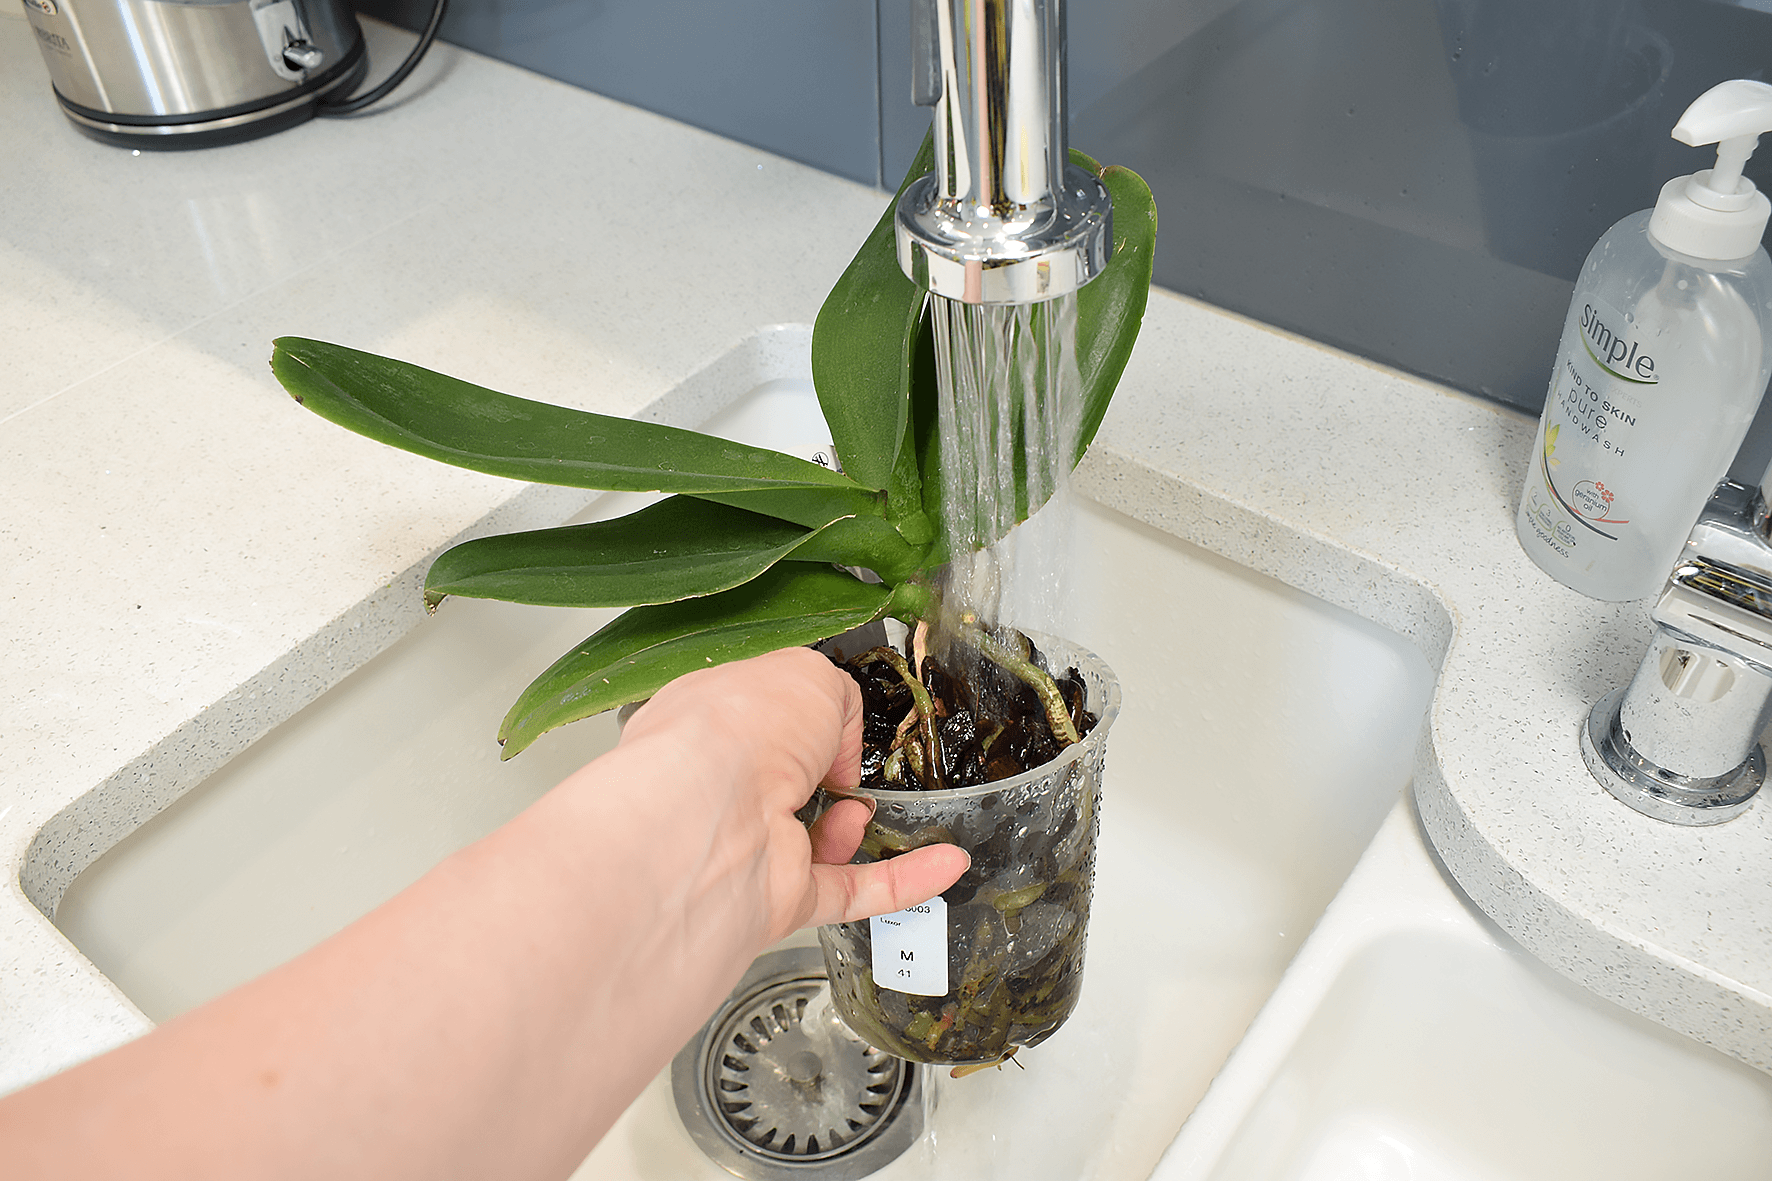 Как поливать орхидею в домашних условиях? особенности полива в определенное время развития. фото — ботаничка.ru